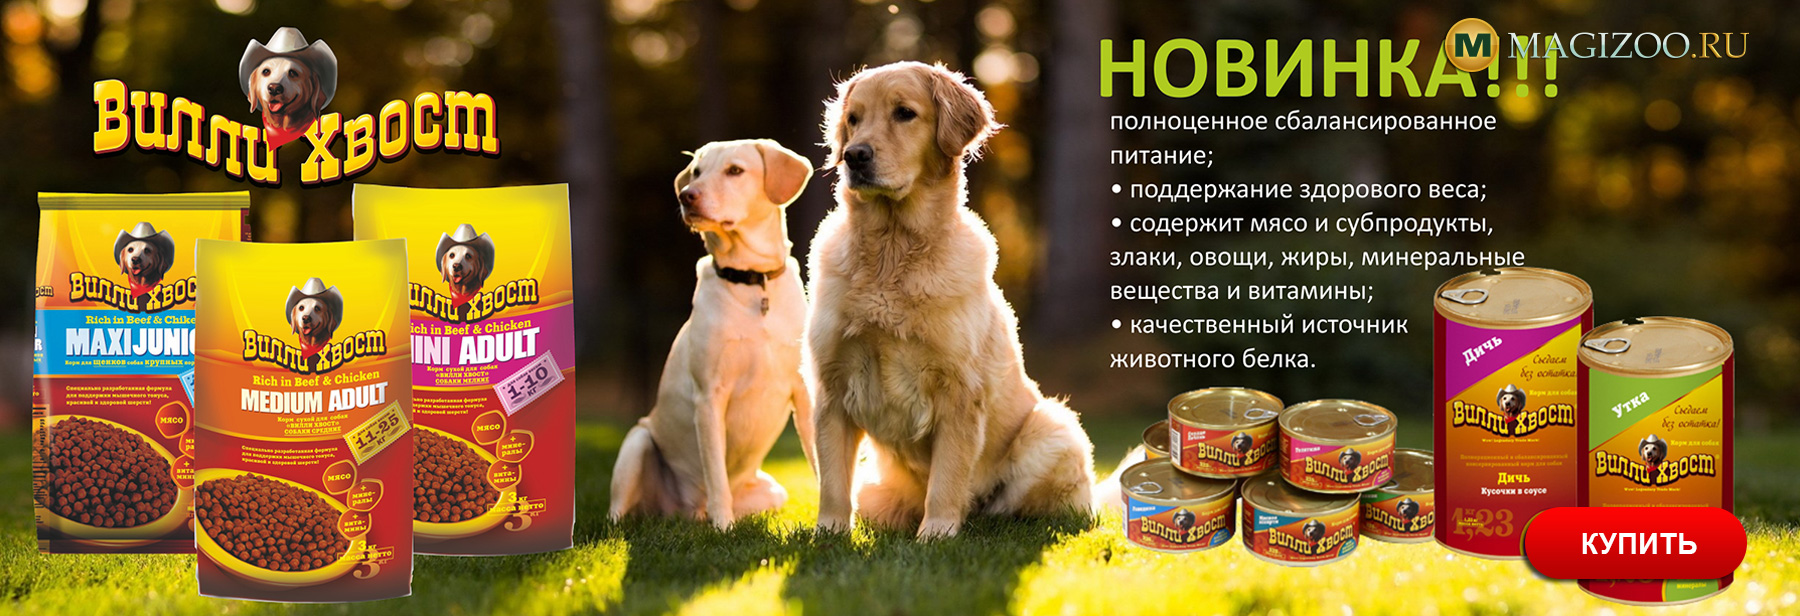 Ассортимент кормов для собак пополнился новым ВИЛЛИ ХВОСТ —  интернет-магазин «MAGIZOO.RU»